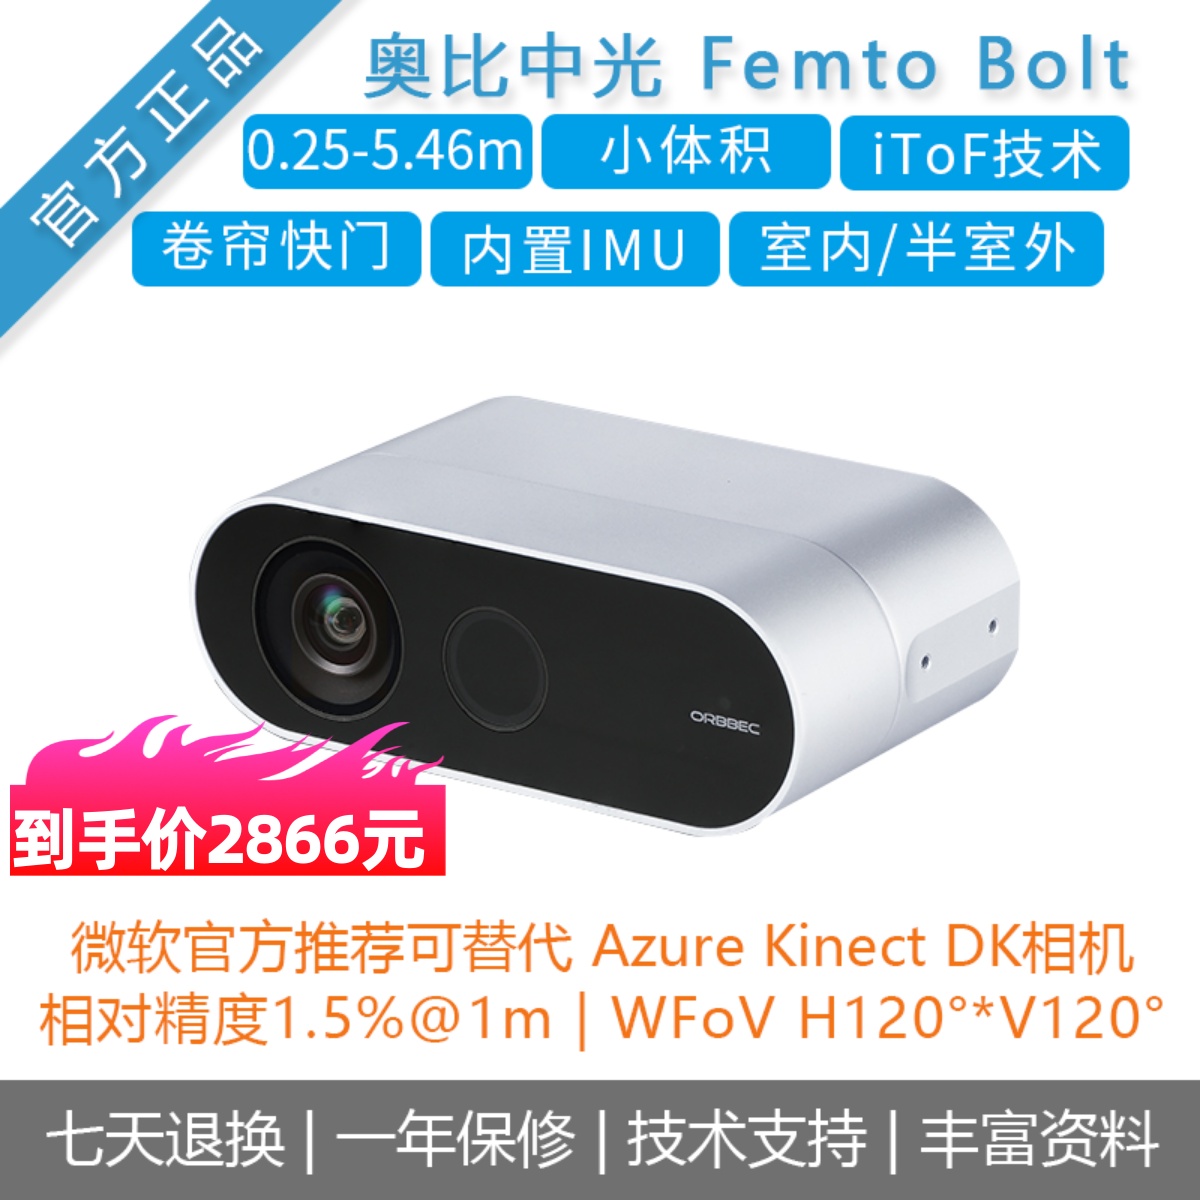 奥比中光[Femto Bolt]深度相机 微软官方推荐Azure Kinect DK替代